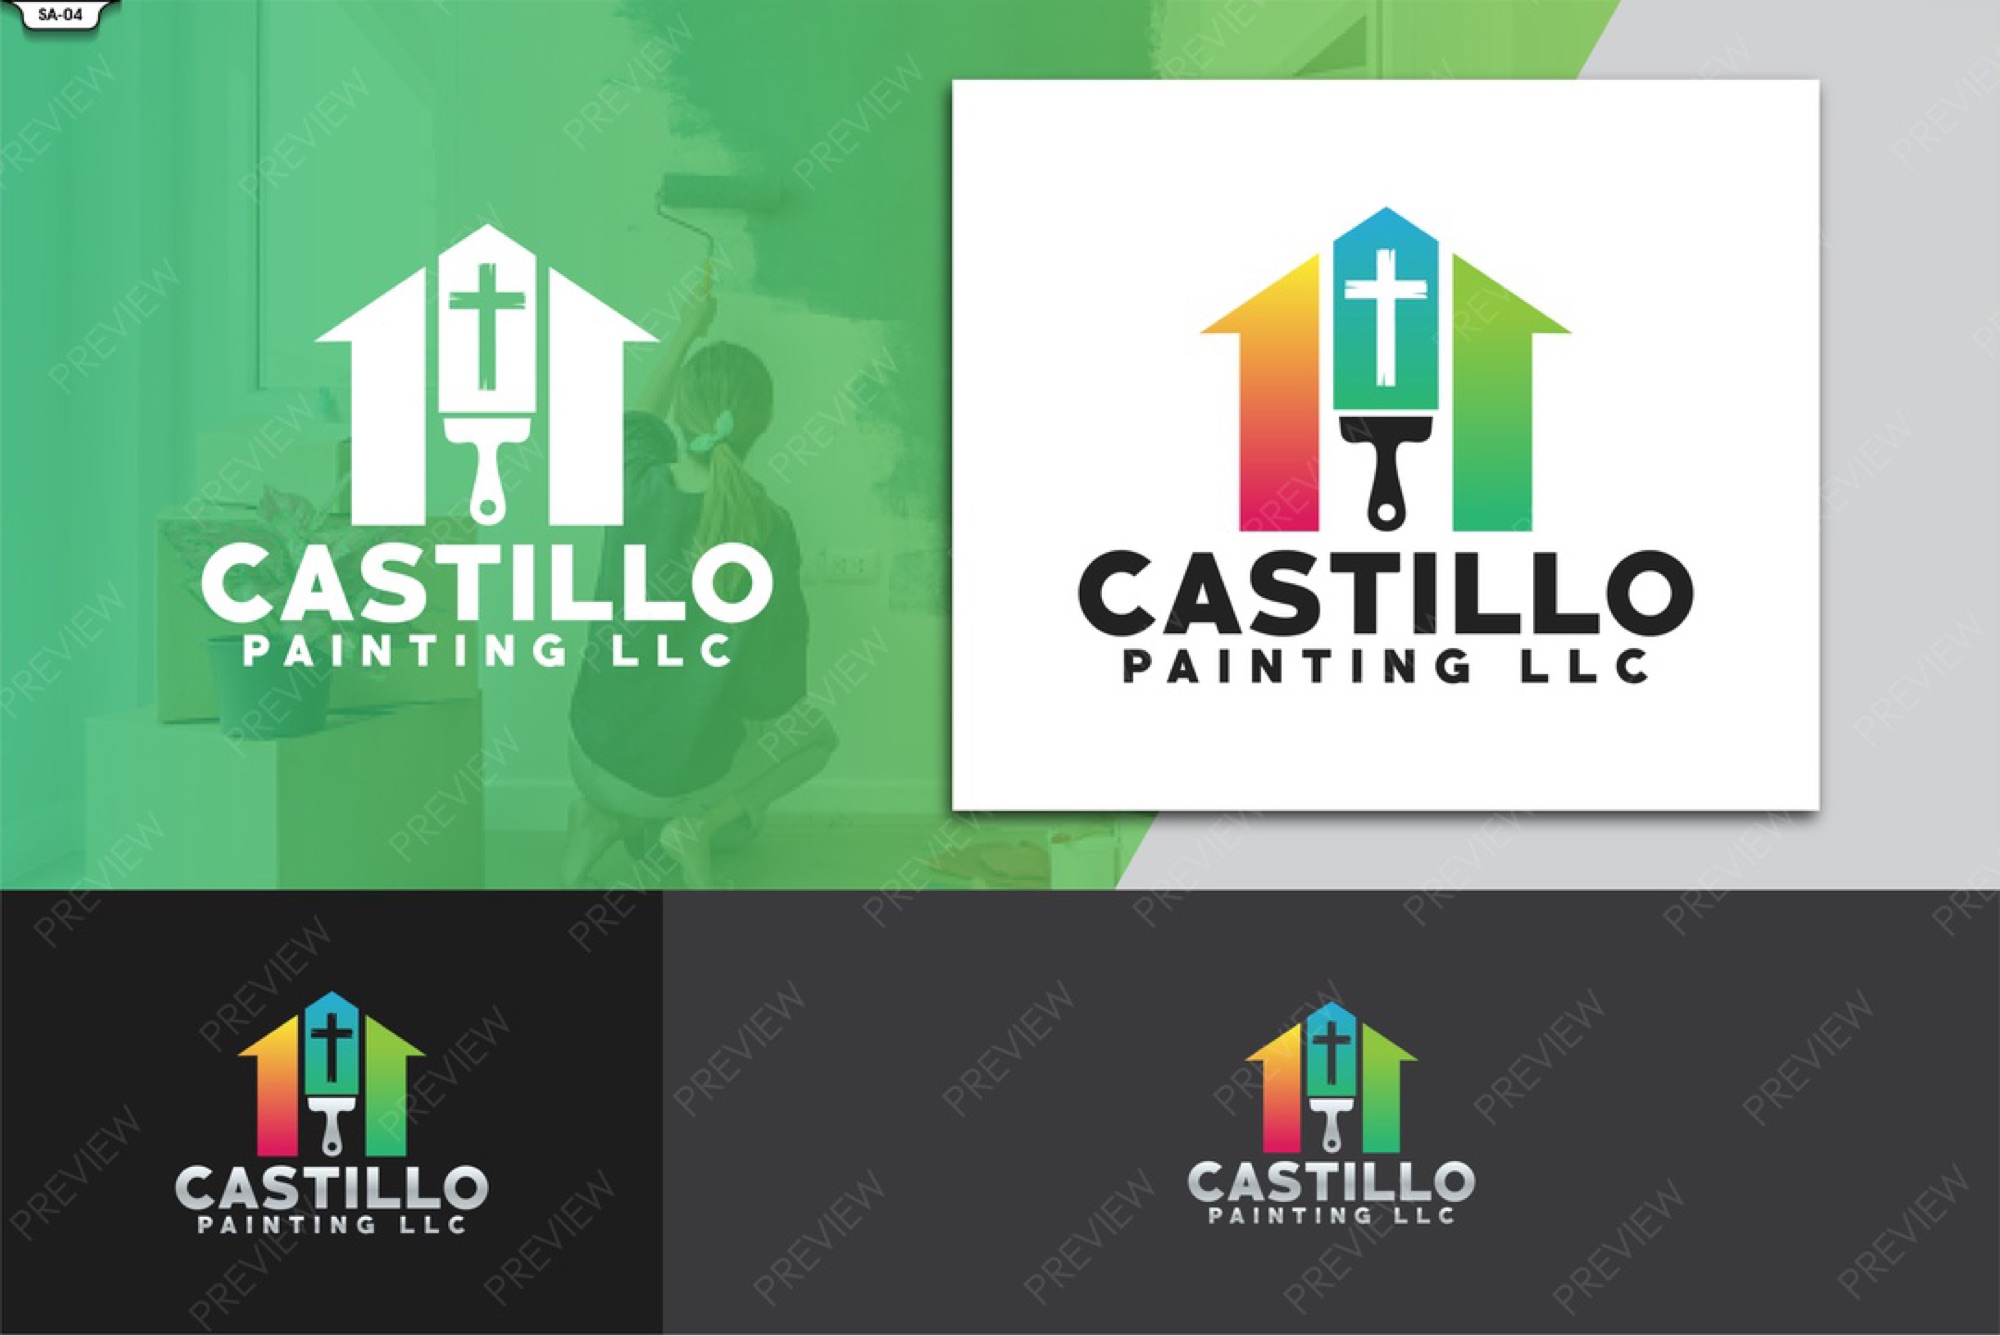 Castillo Painting, LLC Logo